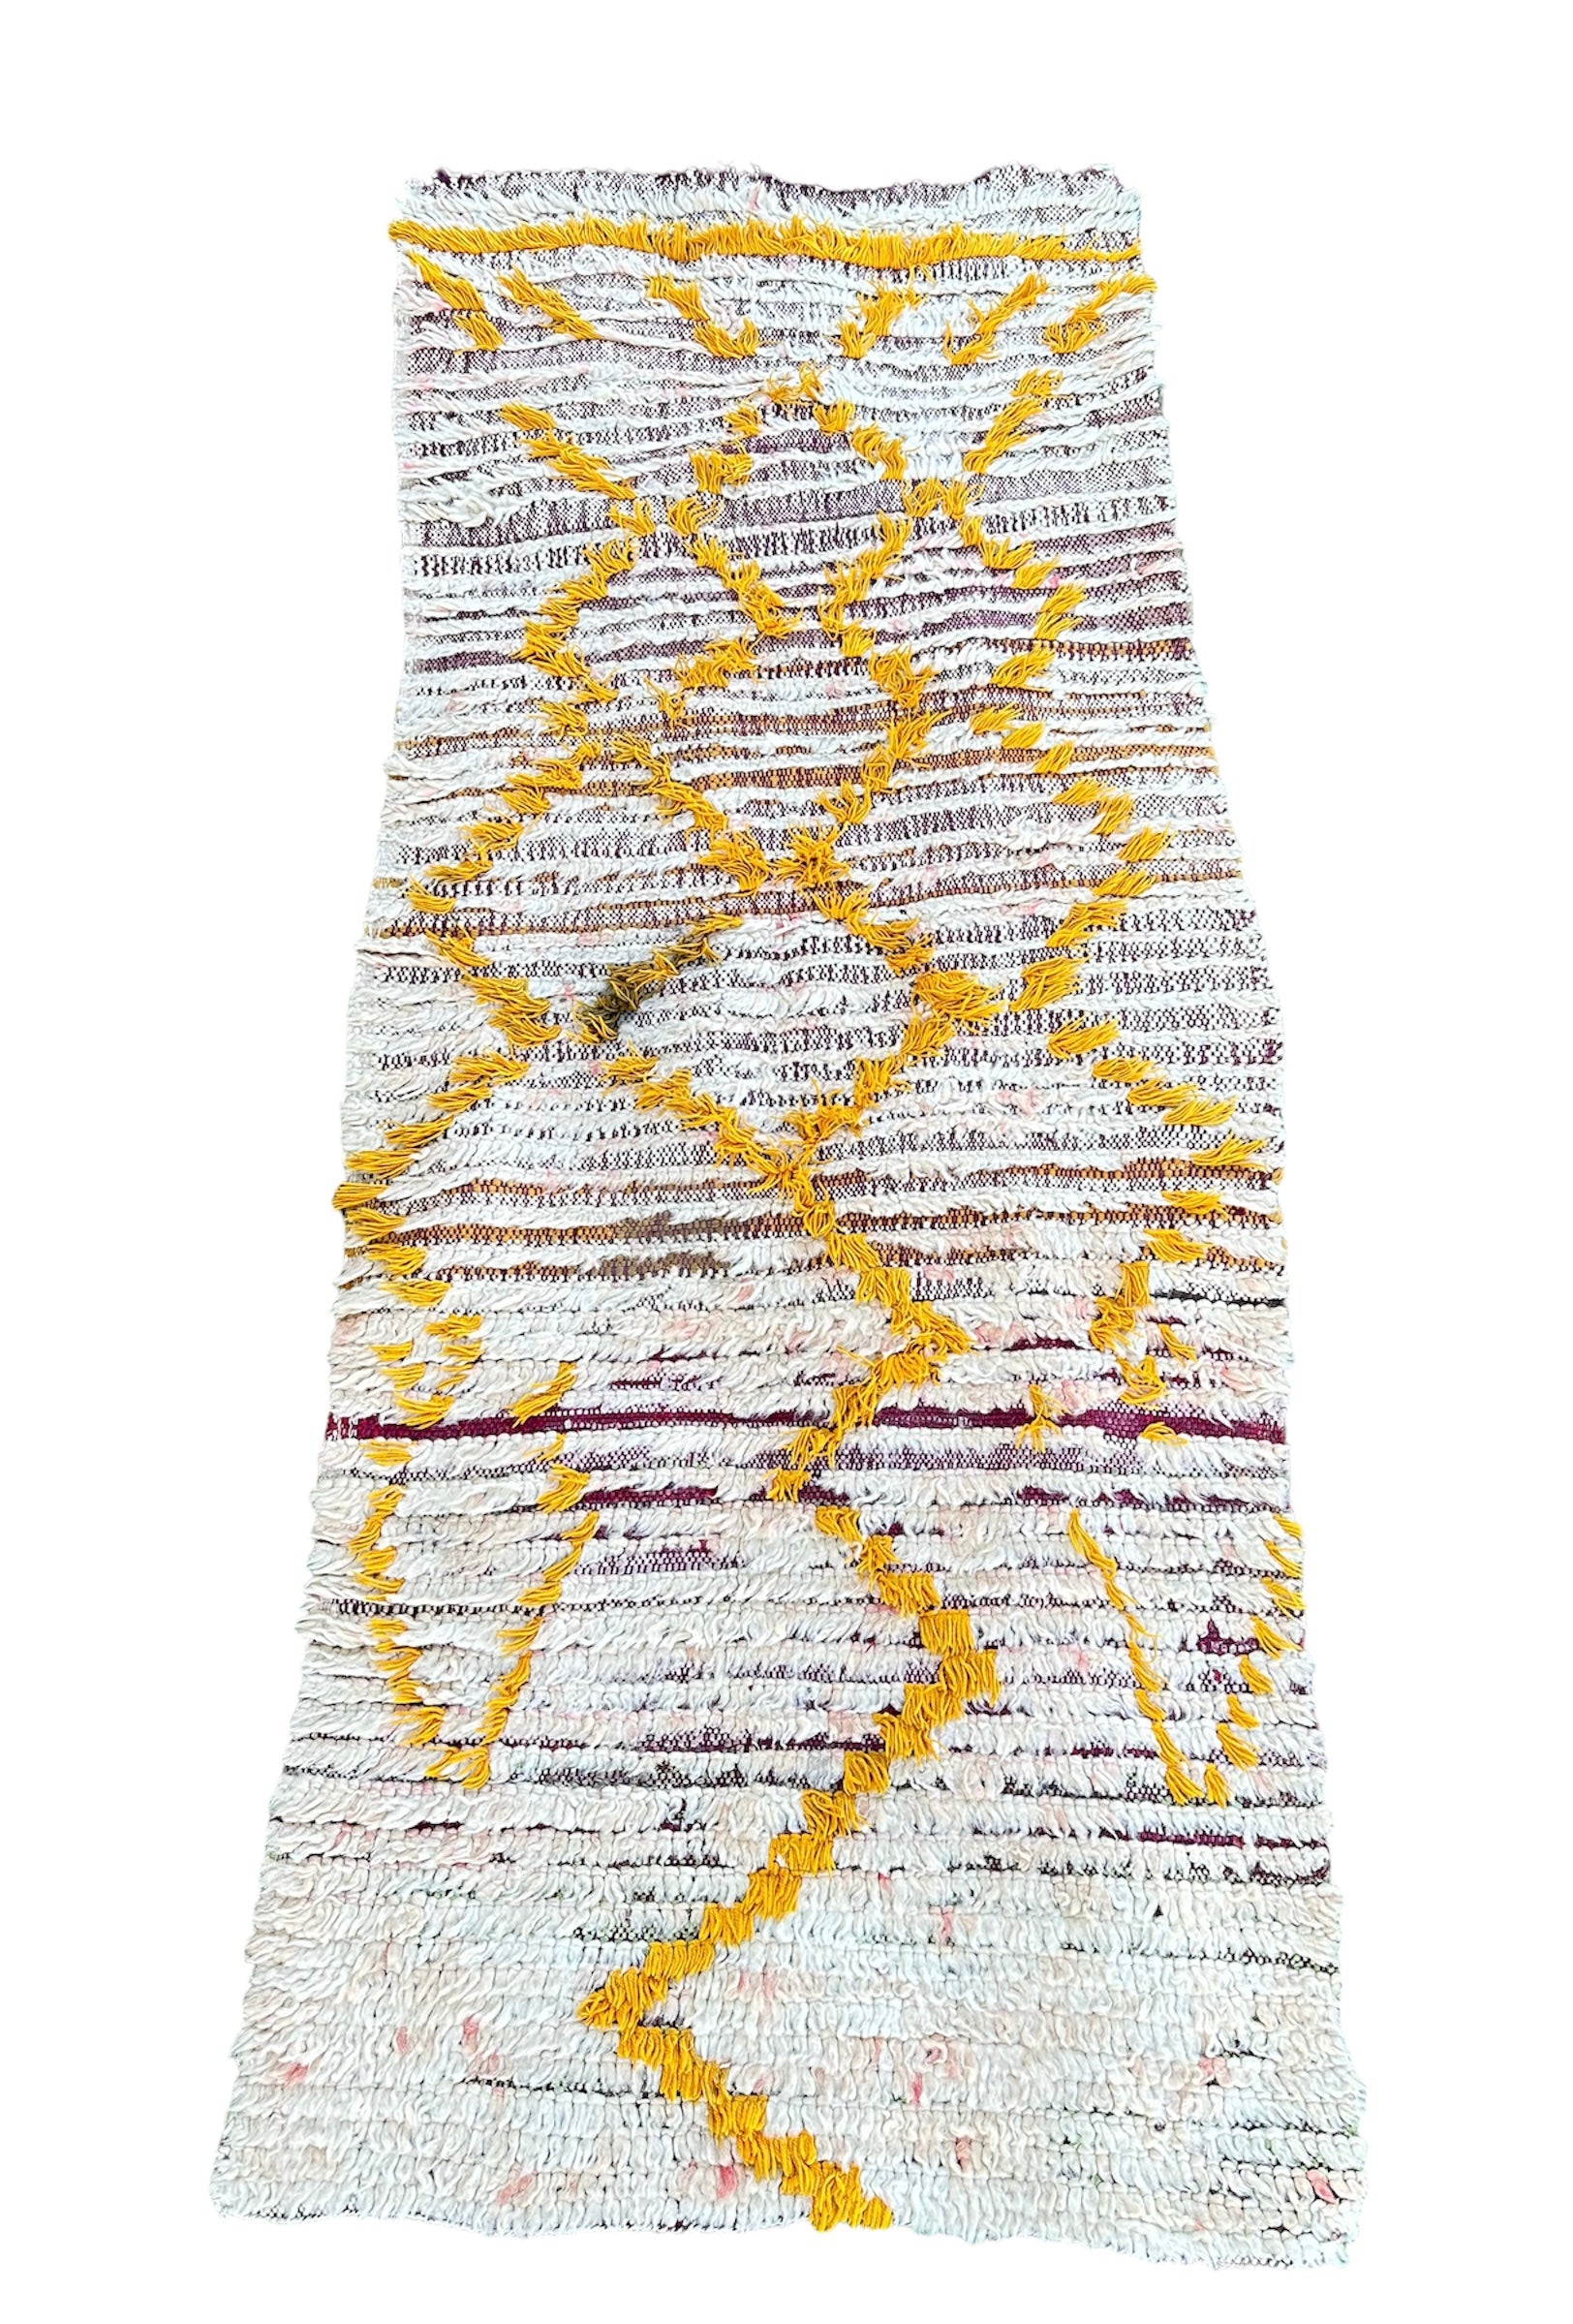 Barber tæppe fra Marokko i en lys farve med gule streger